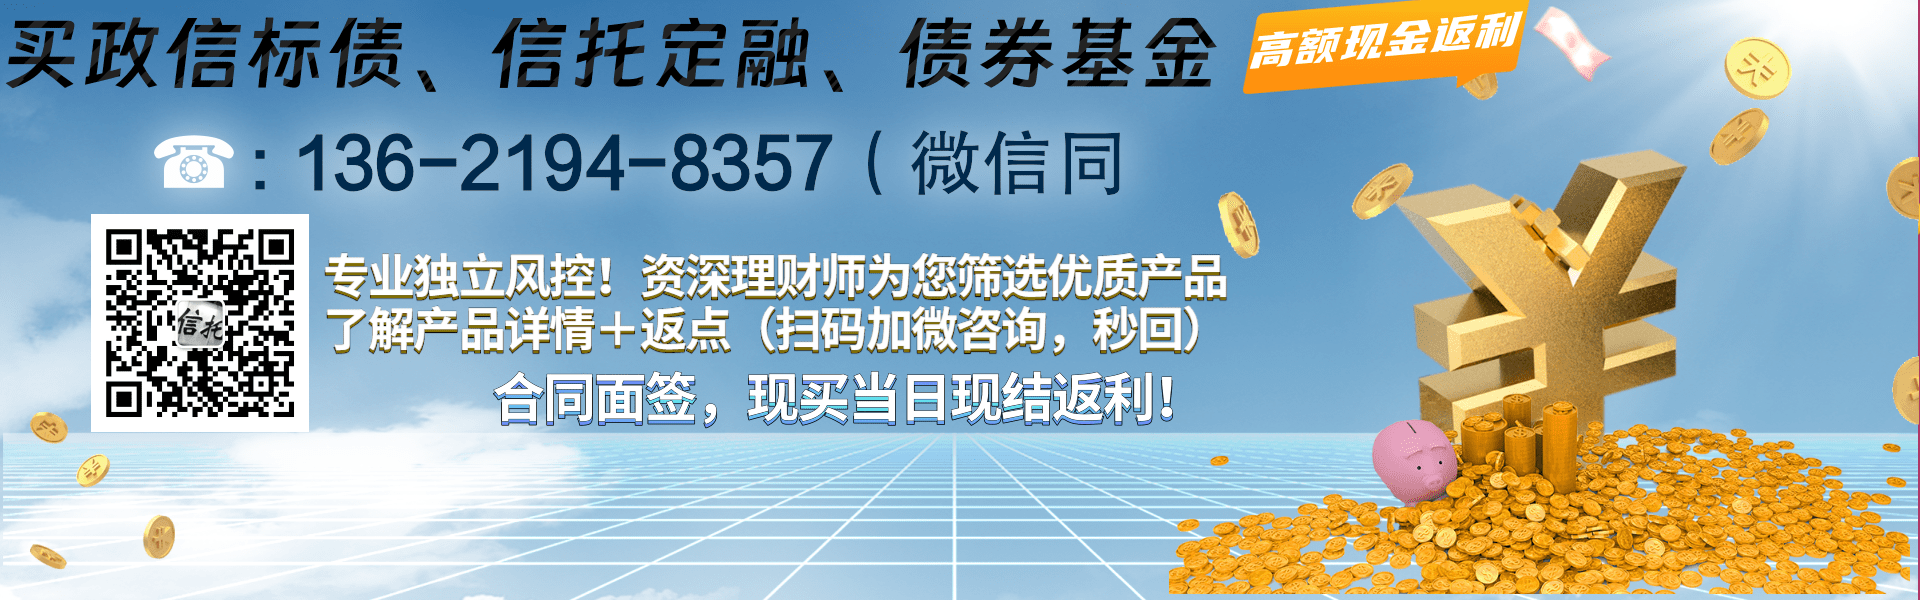 山东潍坊滨海新城公有资产债权合同存证